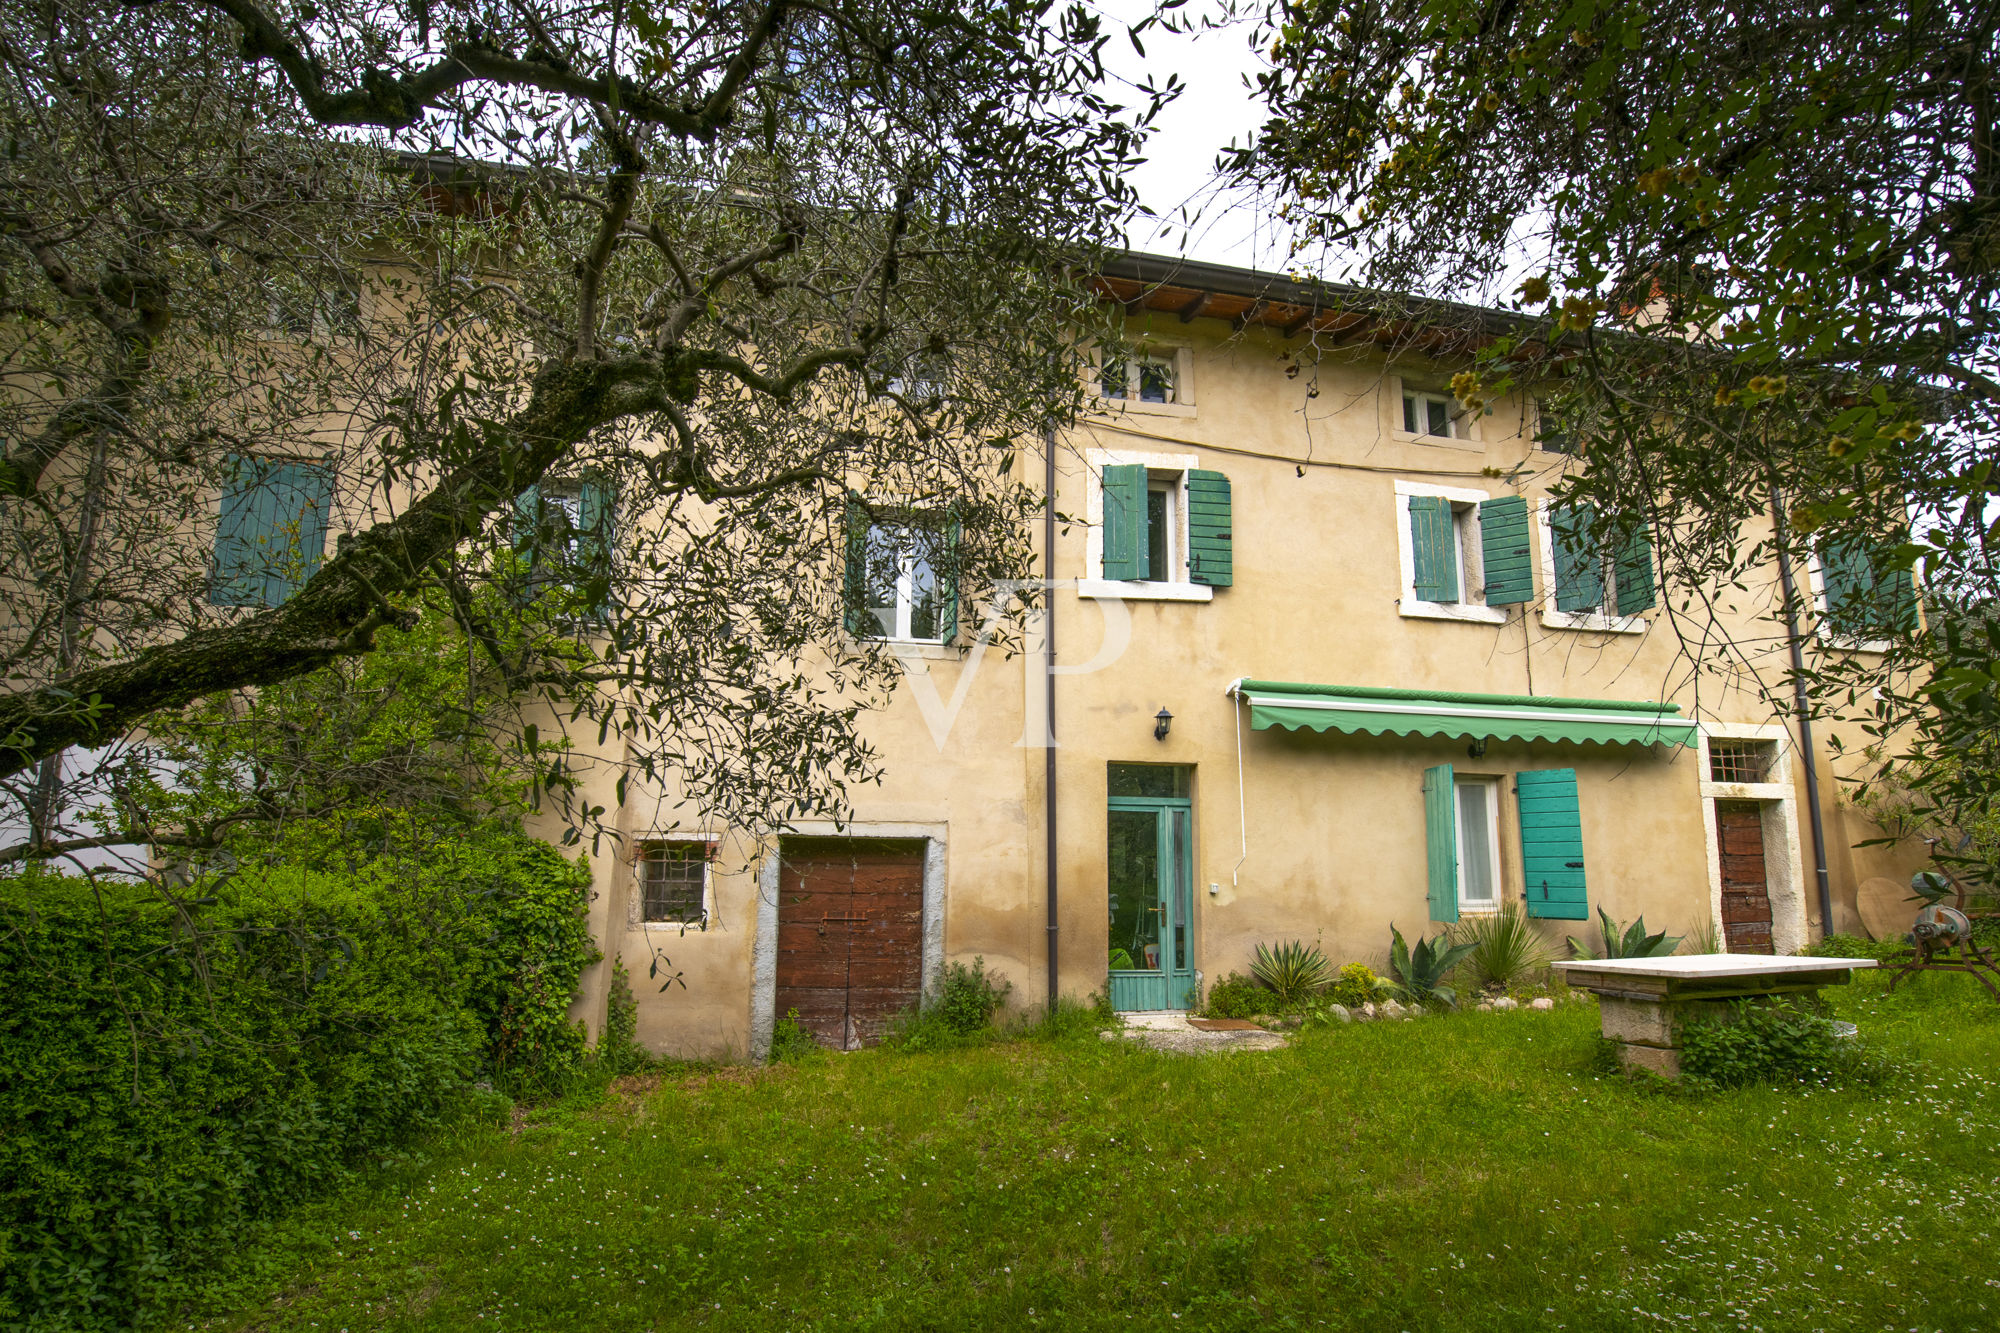 Wunderschönes, teilweise renoviertes ortstypisches Landhaus mit Seeblick